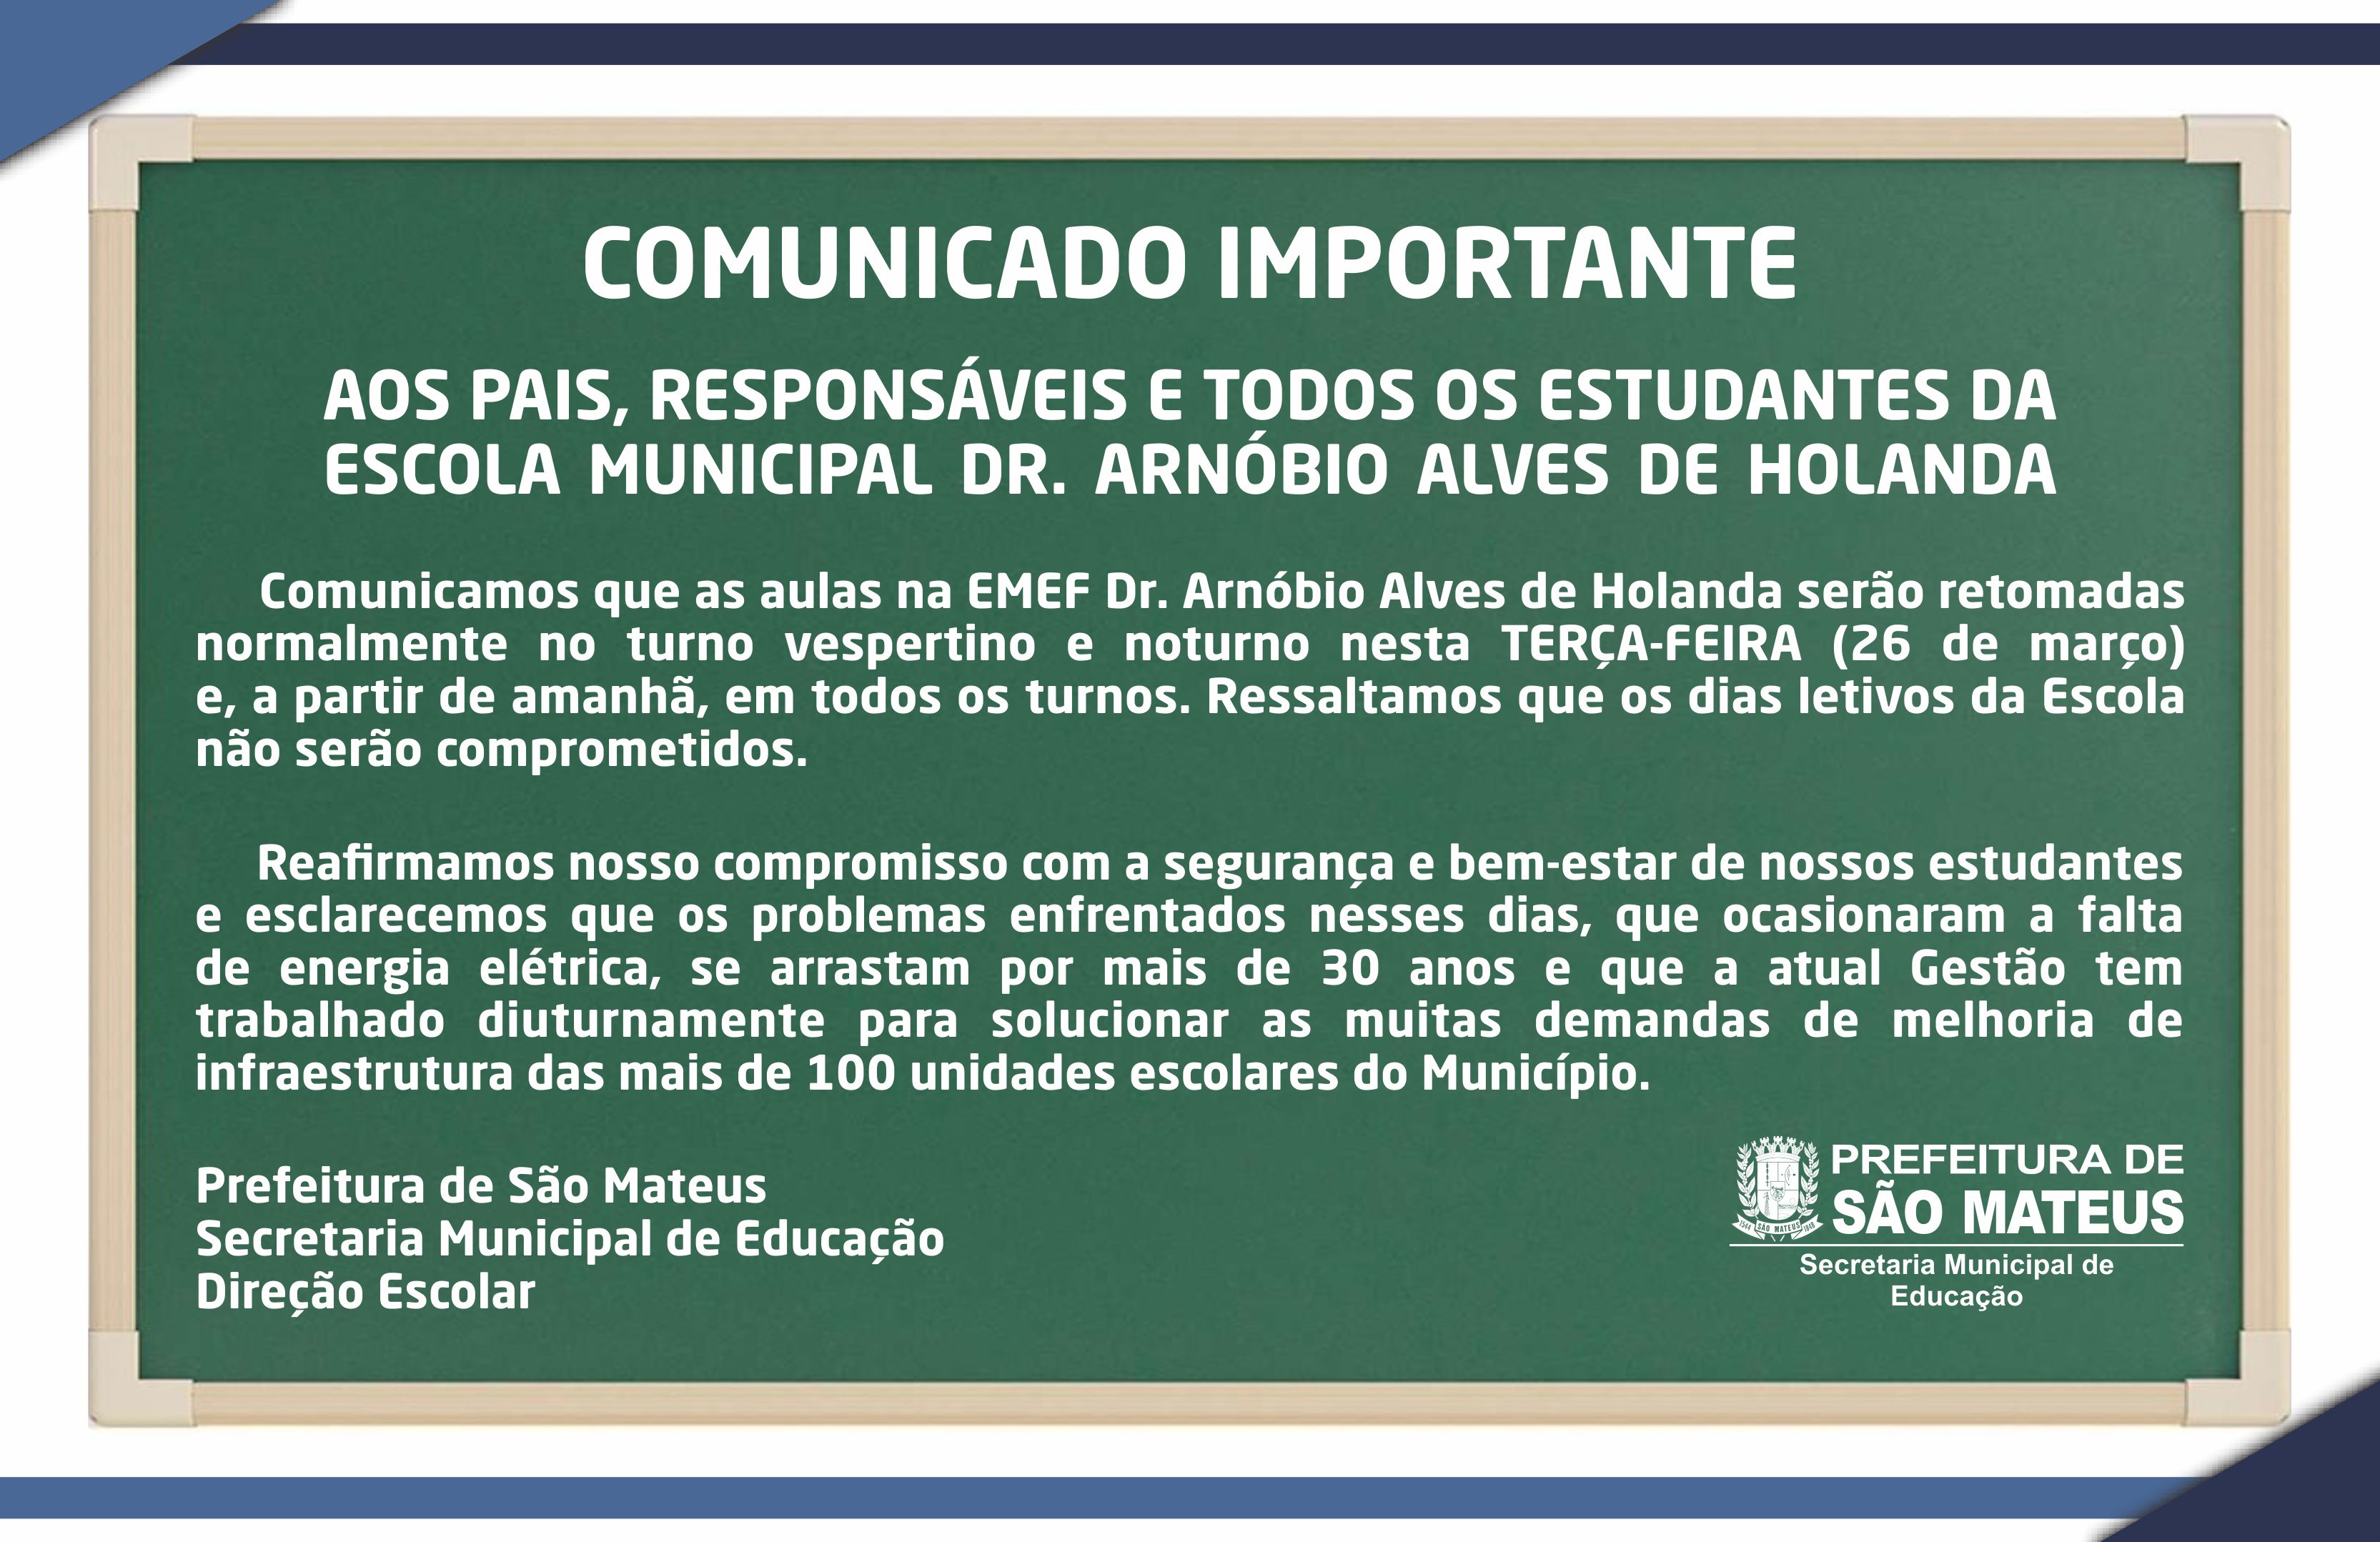 COMUNICADO IMPORTANTE DA ESCOLA MUNICIPAL DR. ARNÓBIO ALVES DE HOLANDA